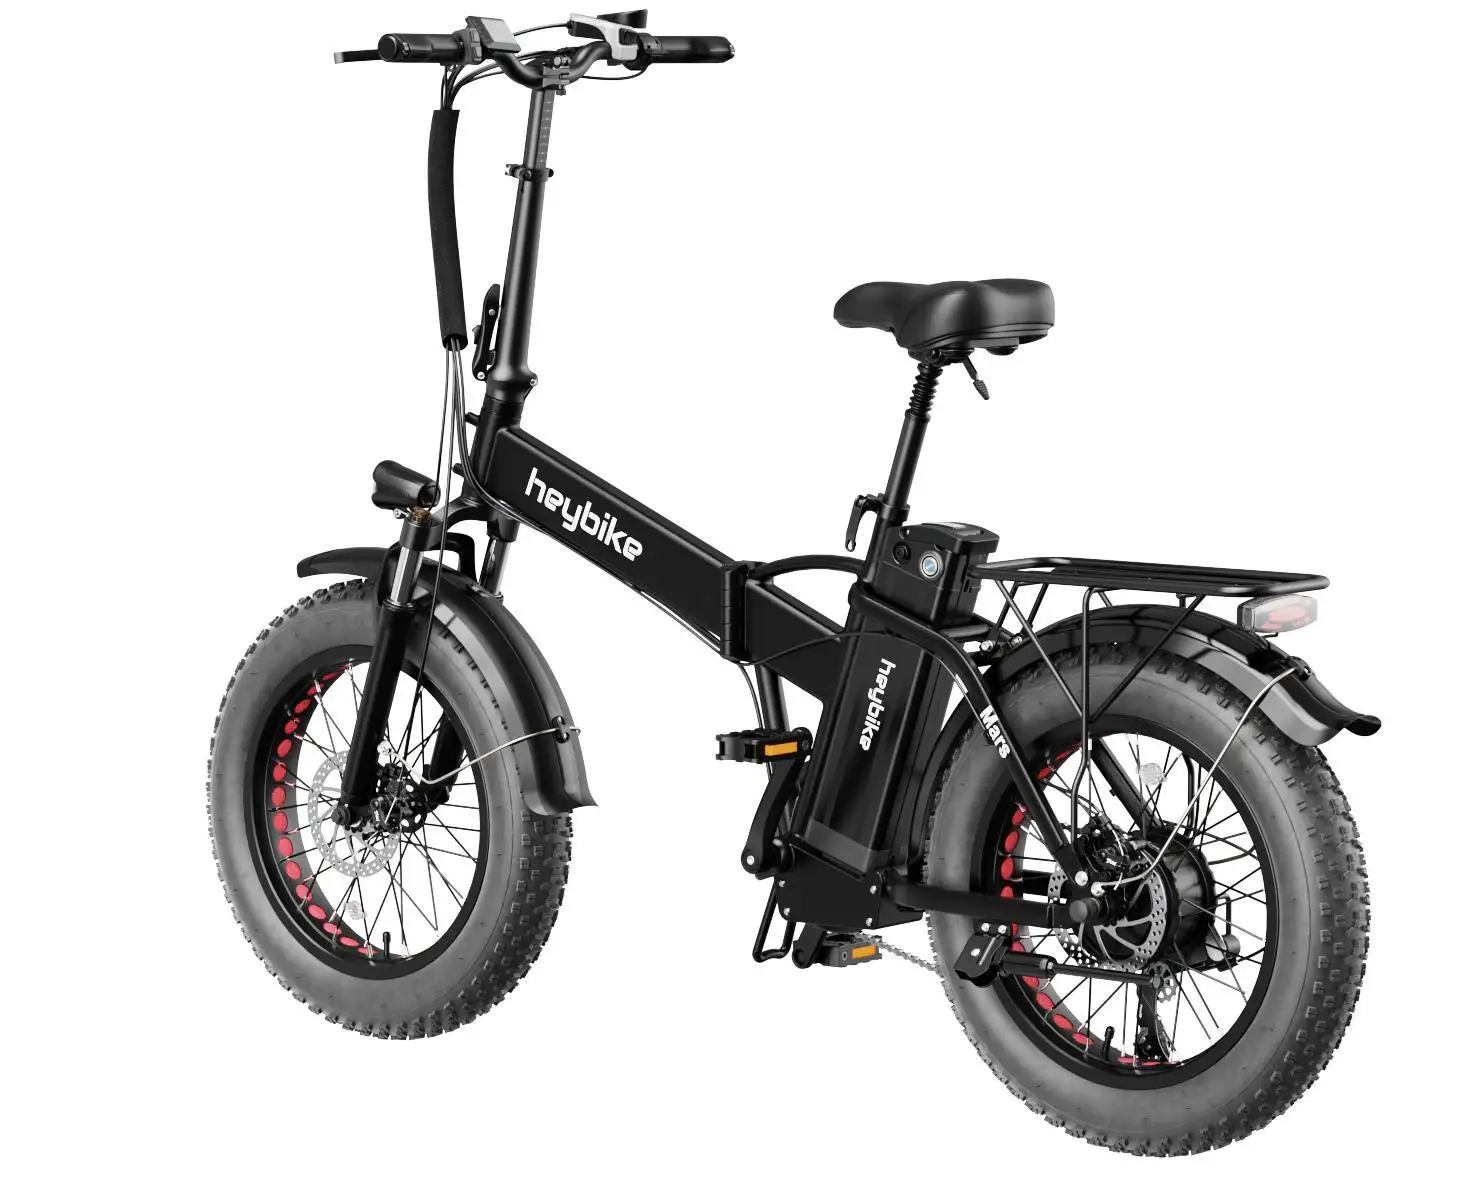 

Складной электрический велосипед Heybike Mars, электрический велосипед с толстыми шинами 20x4,0, с двигателем 500 Вт, 48 в, а/ч, распродажа, Большая скидка